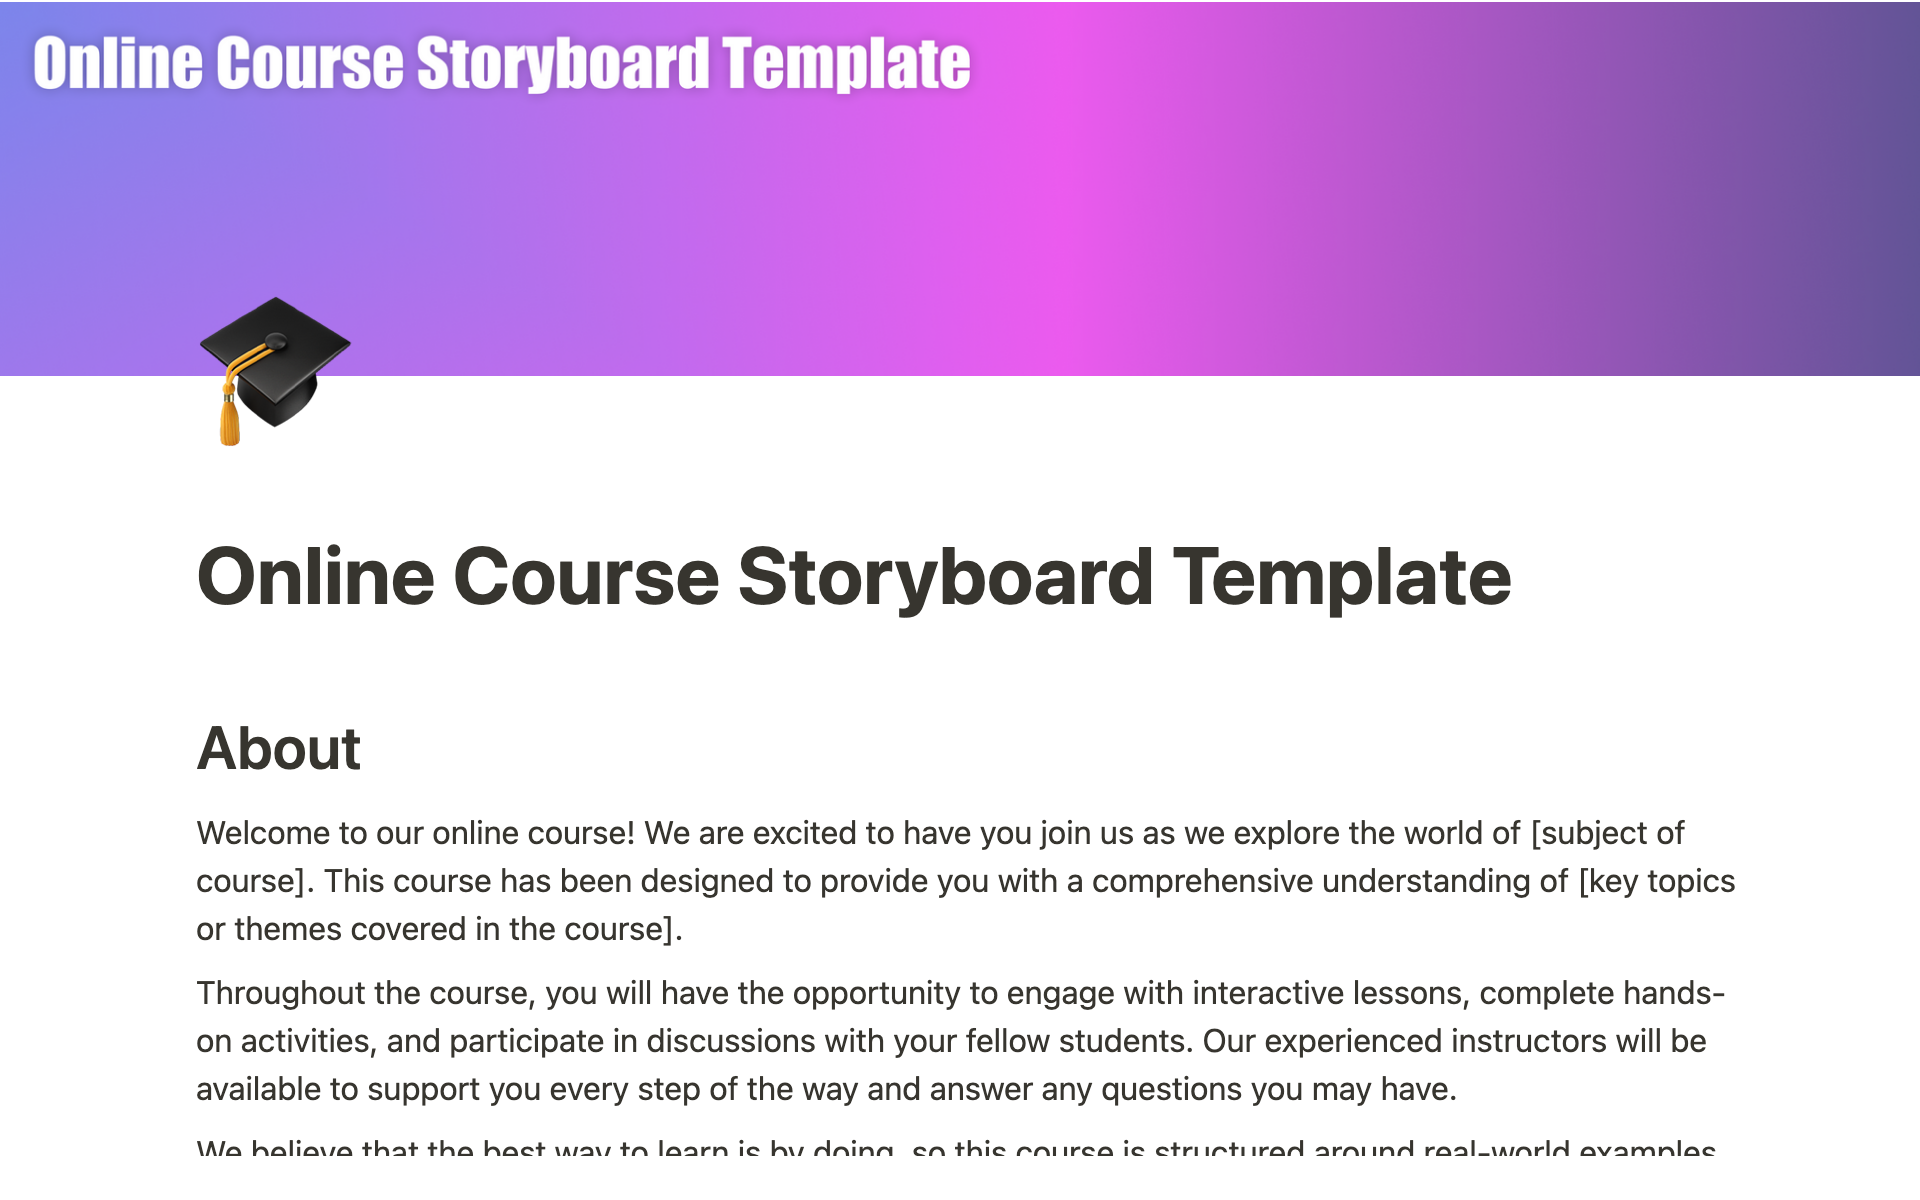 Uma prévia do modelo para Online Course Storyboard